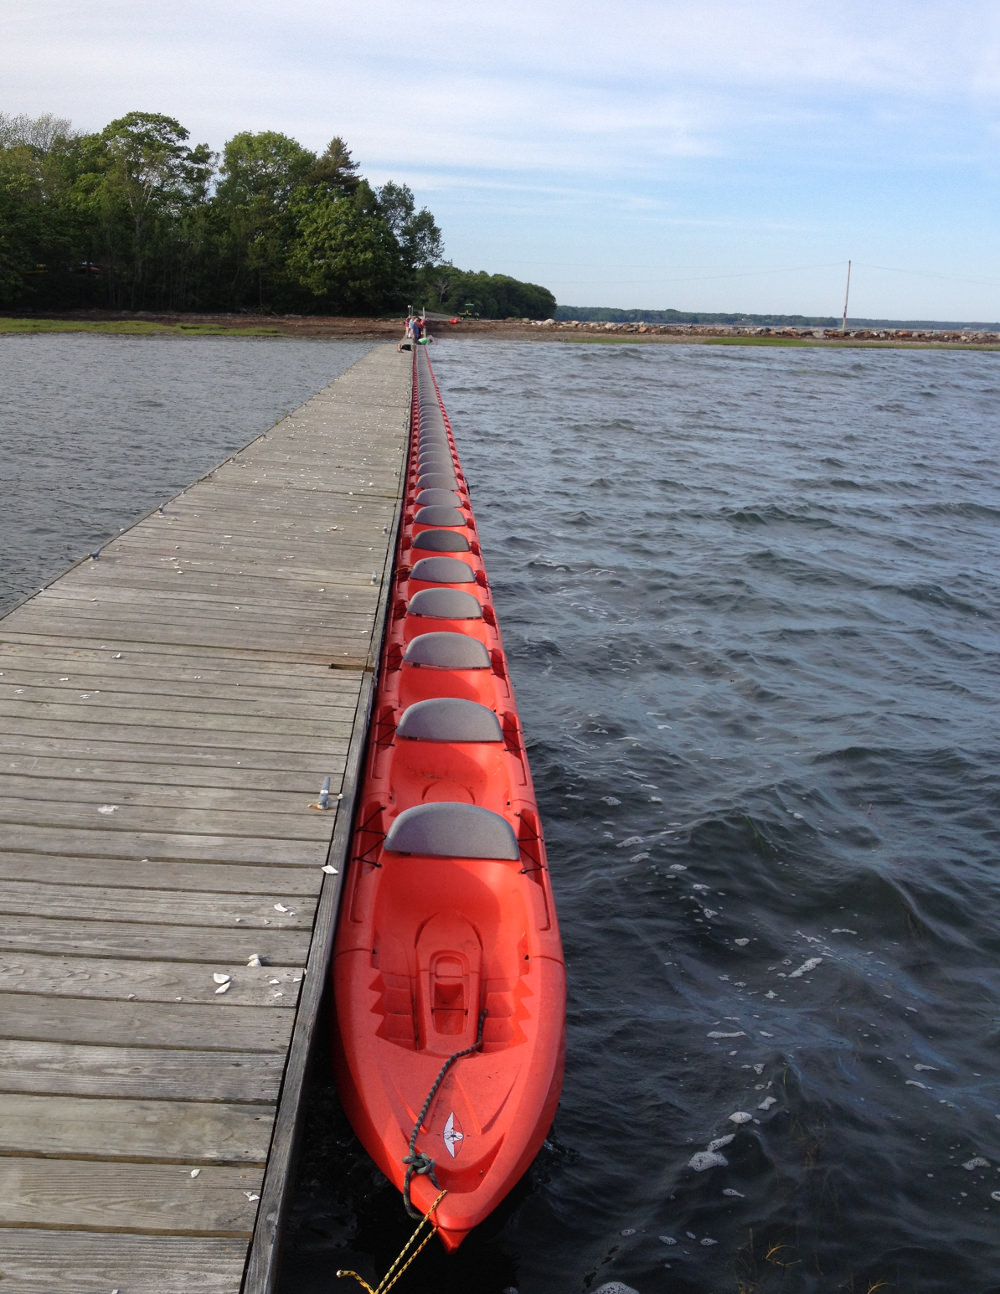 Vaguer objets à flotter - Projet Kayak évolutif par Max Fommeld et Arno Mathies